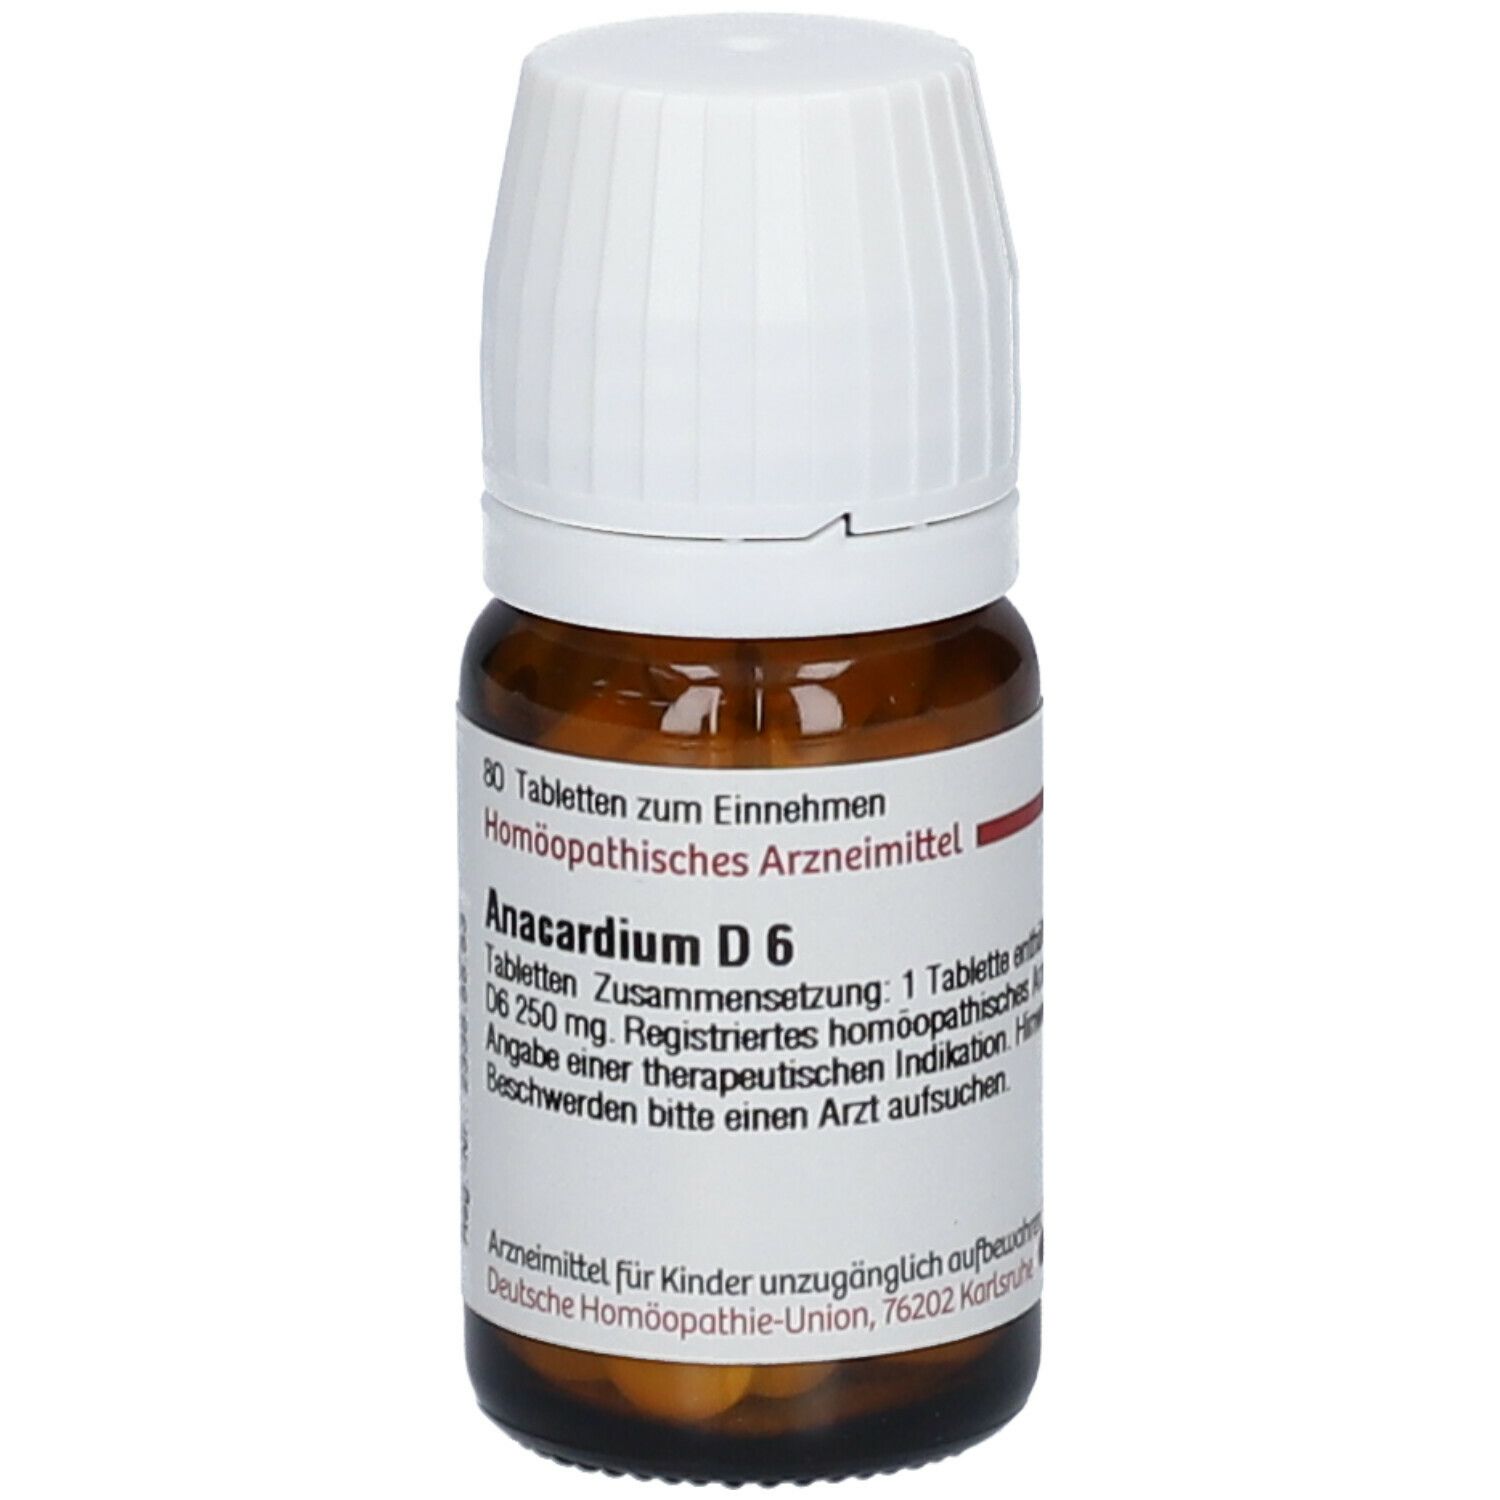 DHU Anacardium D6